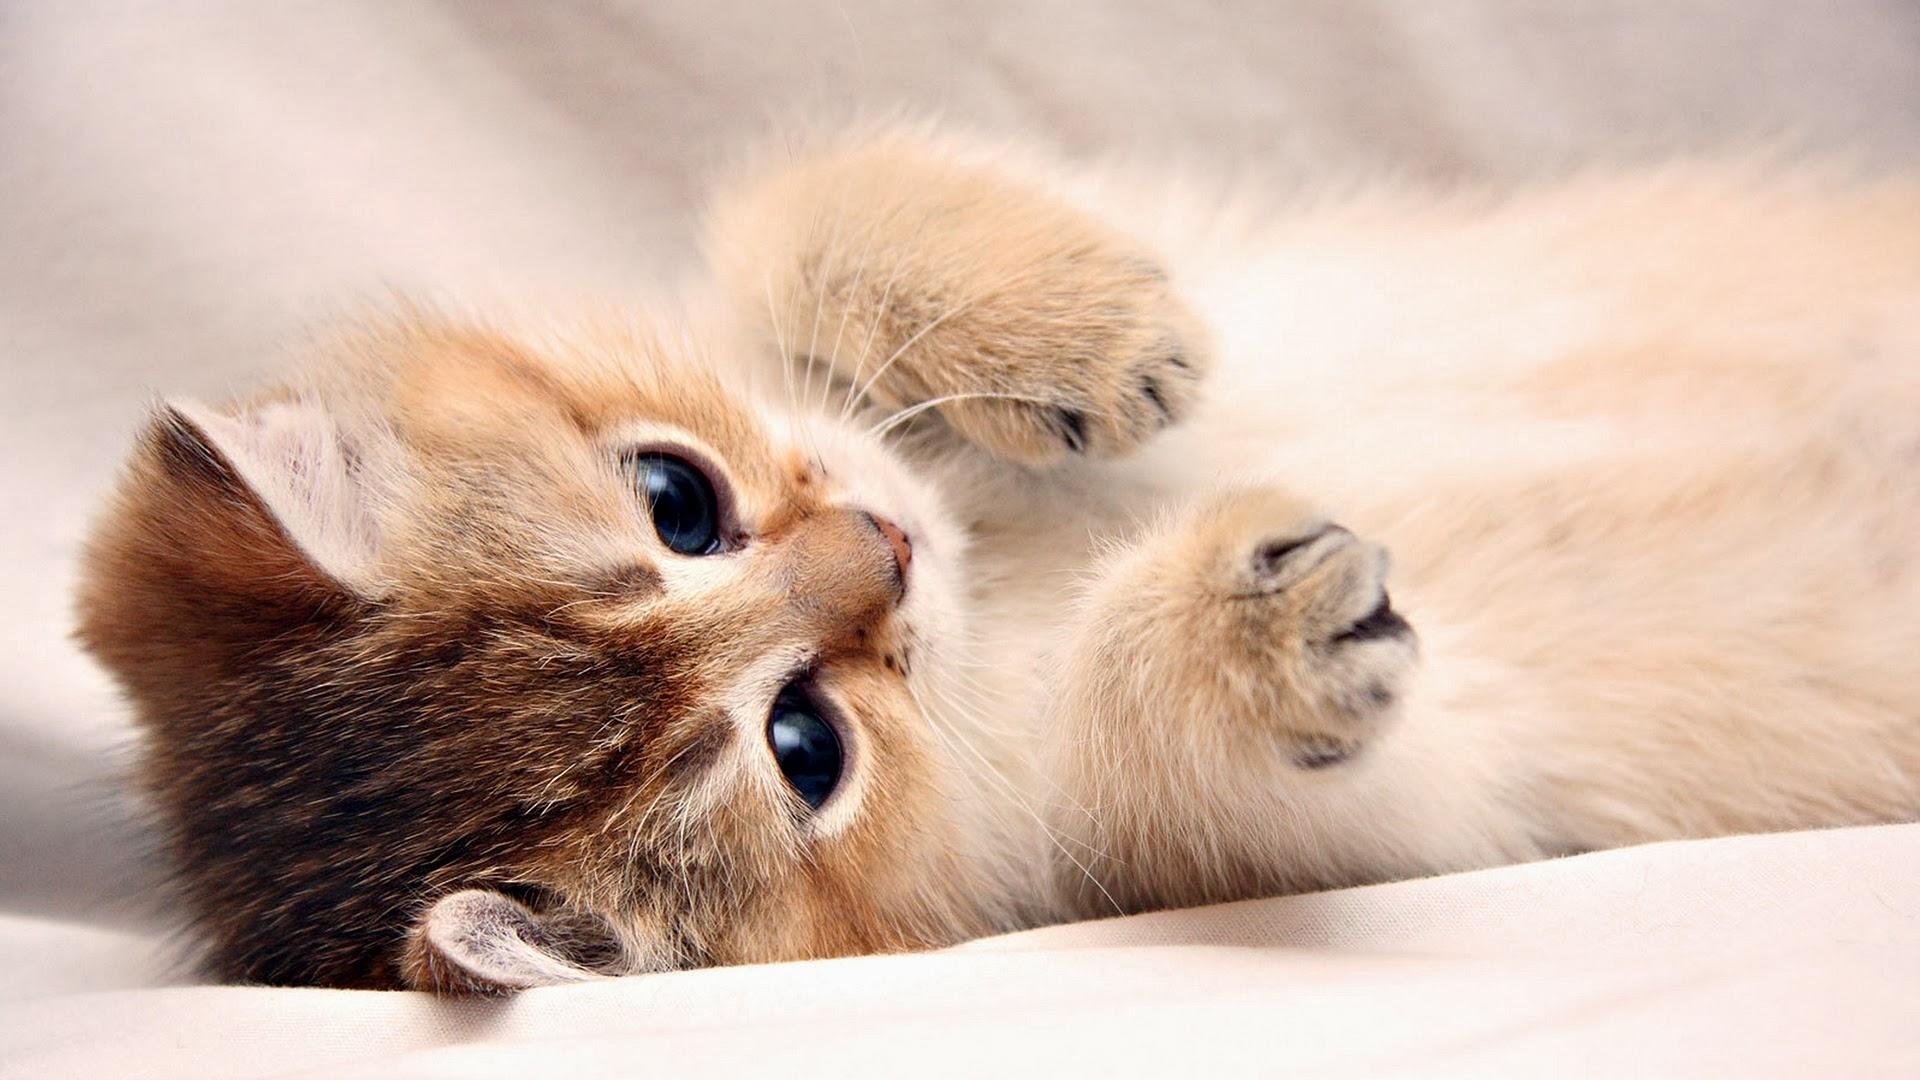 Tổng Hợp 50 Hình ảnh Mèo Con Dễ Thương Và Cute Nhất - Đề án 2020 